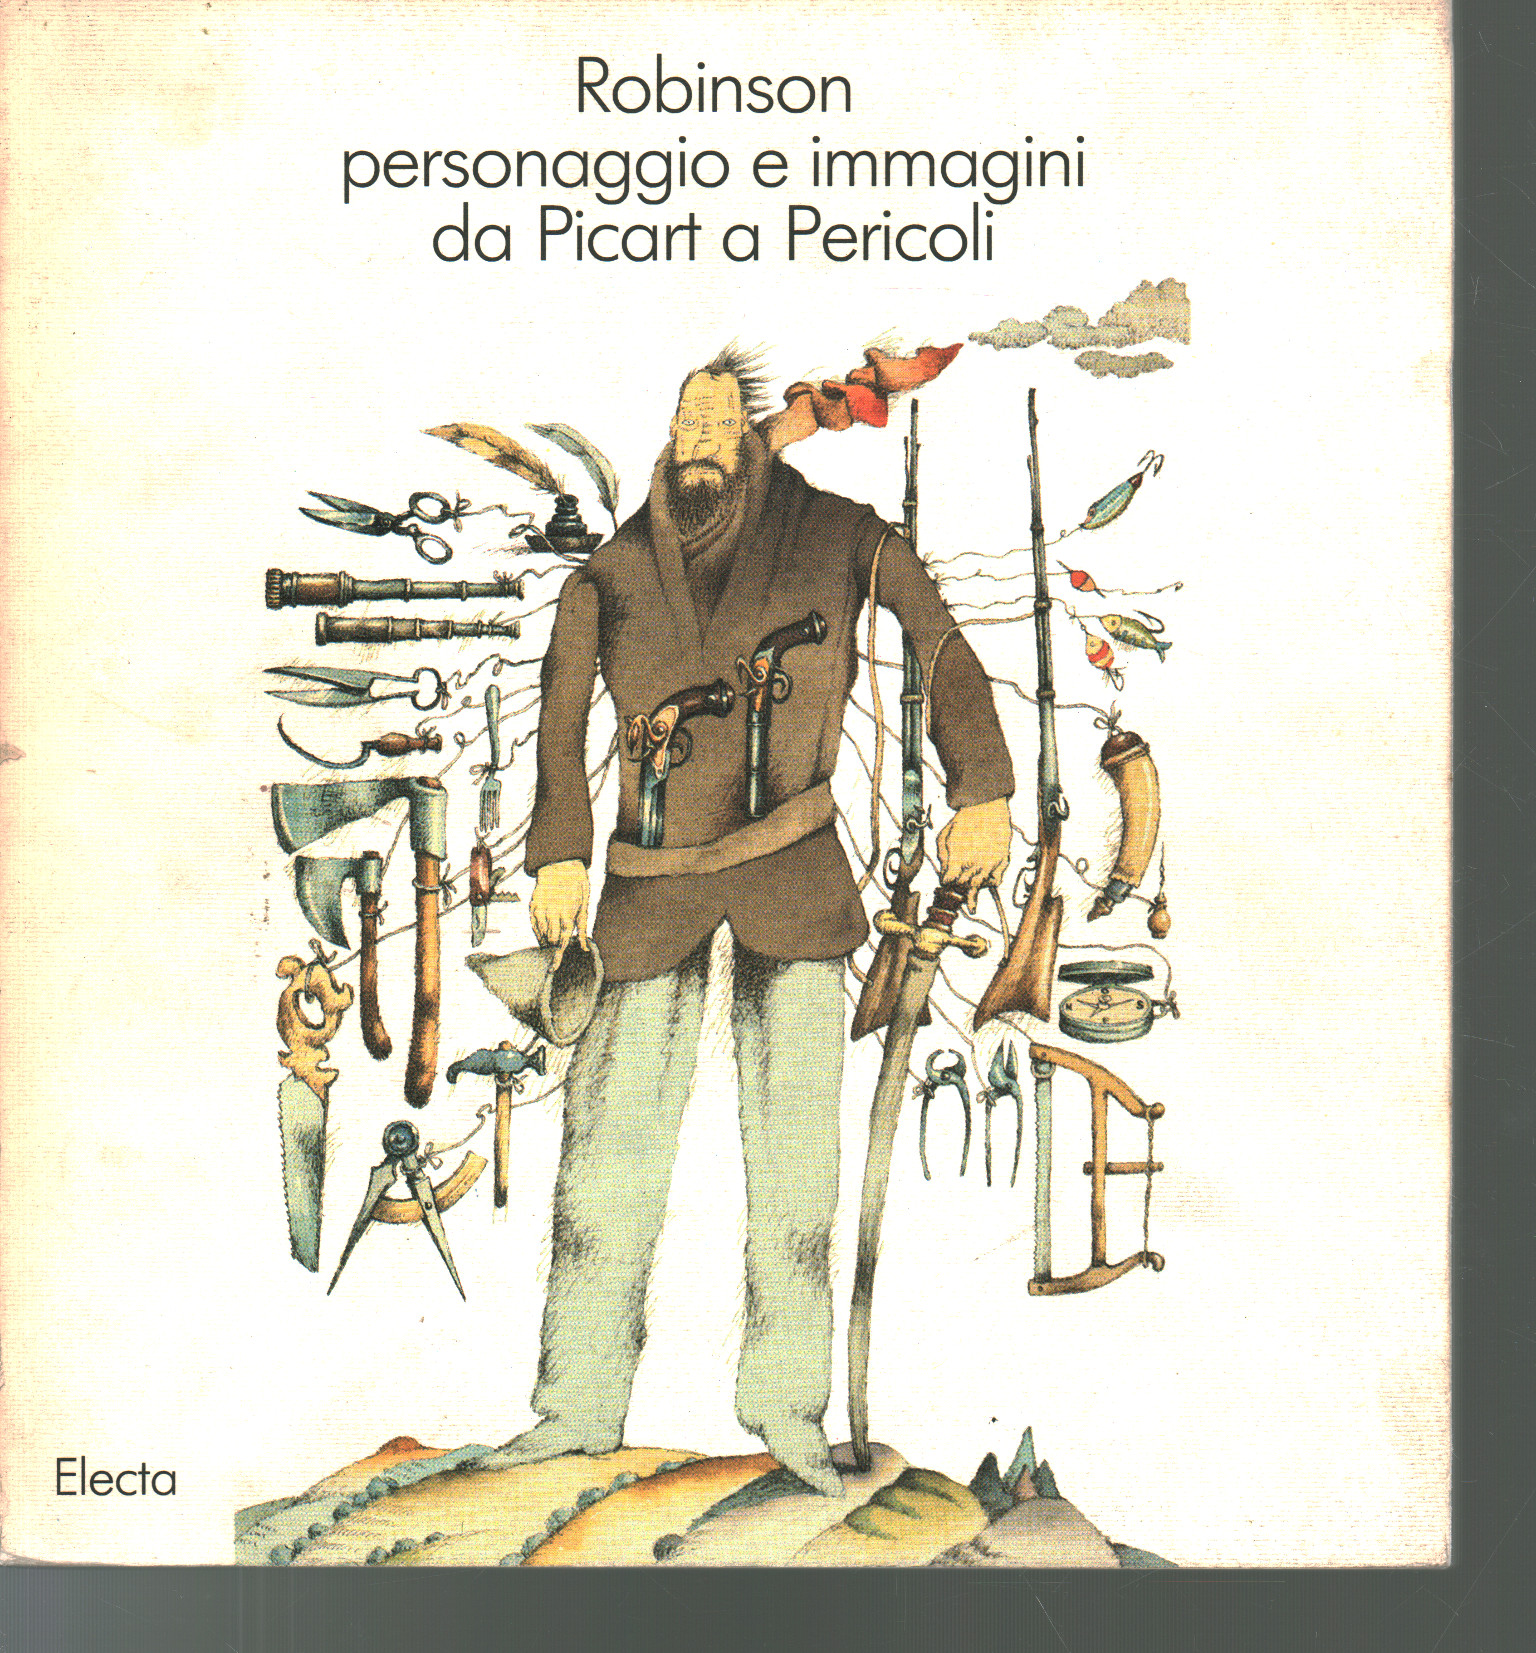 Robinson charakter und bilder von Picart in Perico, Paolo Temeroli